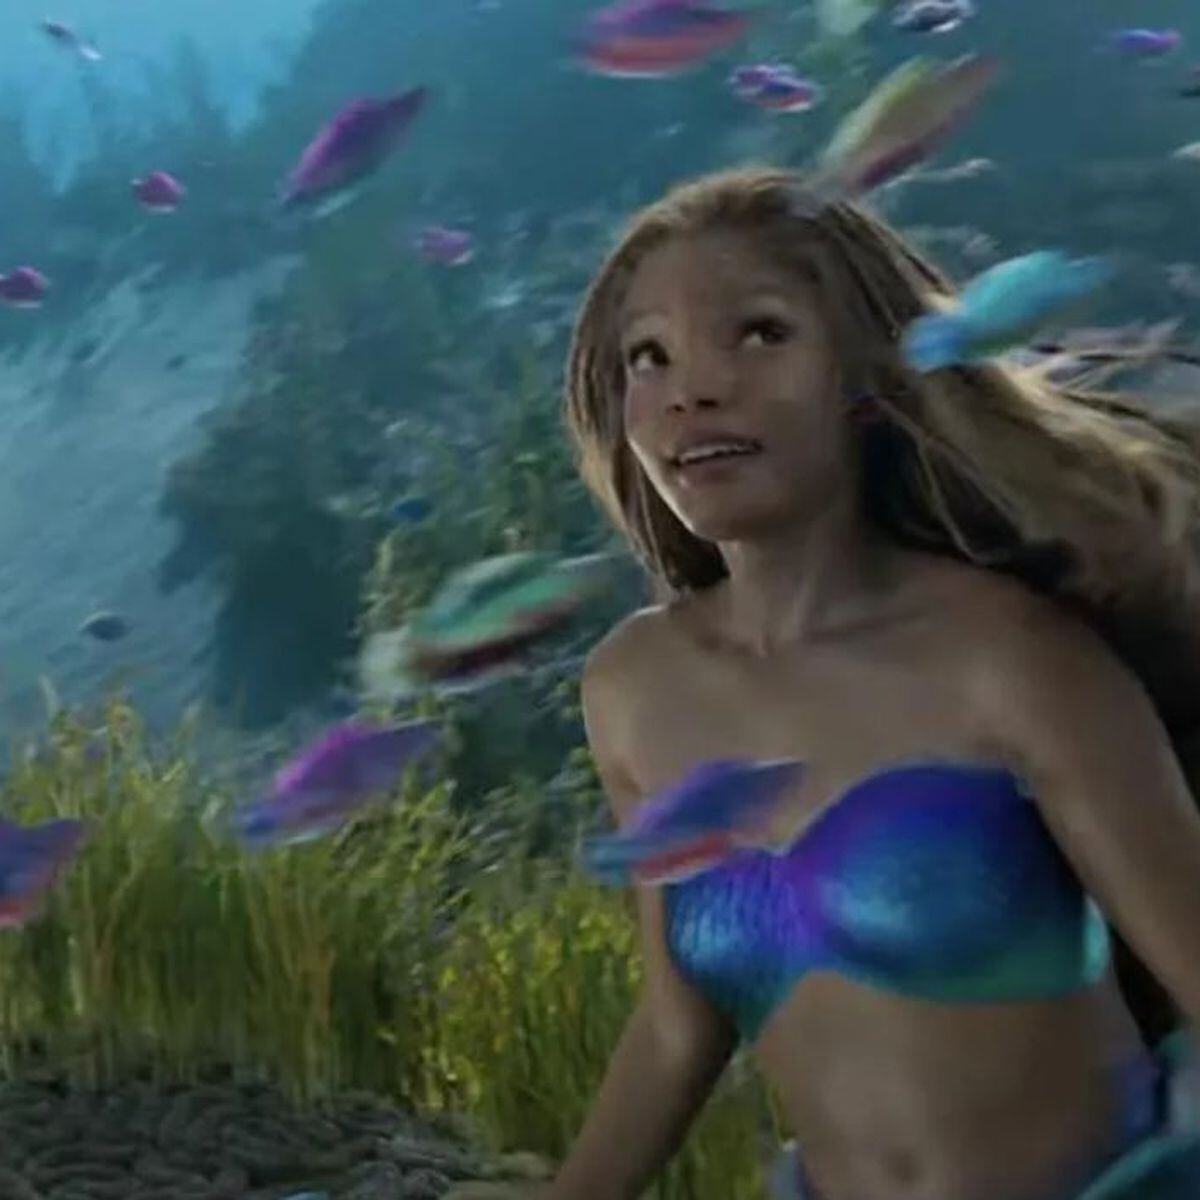 La Sirenita': todo lo que sabemos sobre el polémico remake en